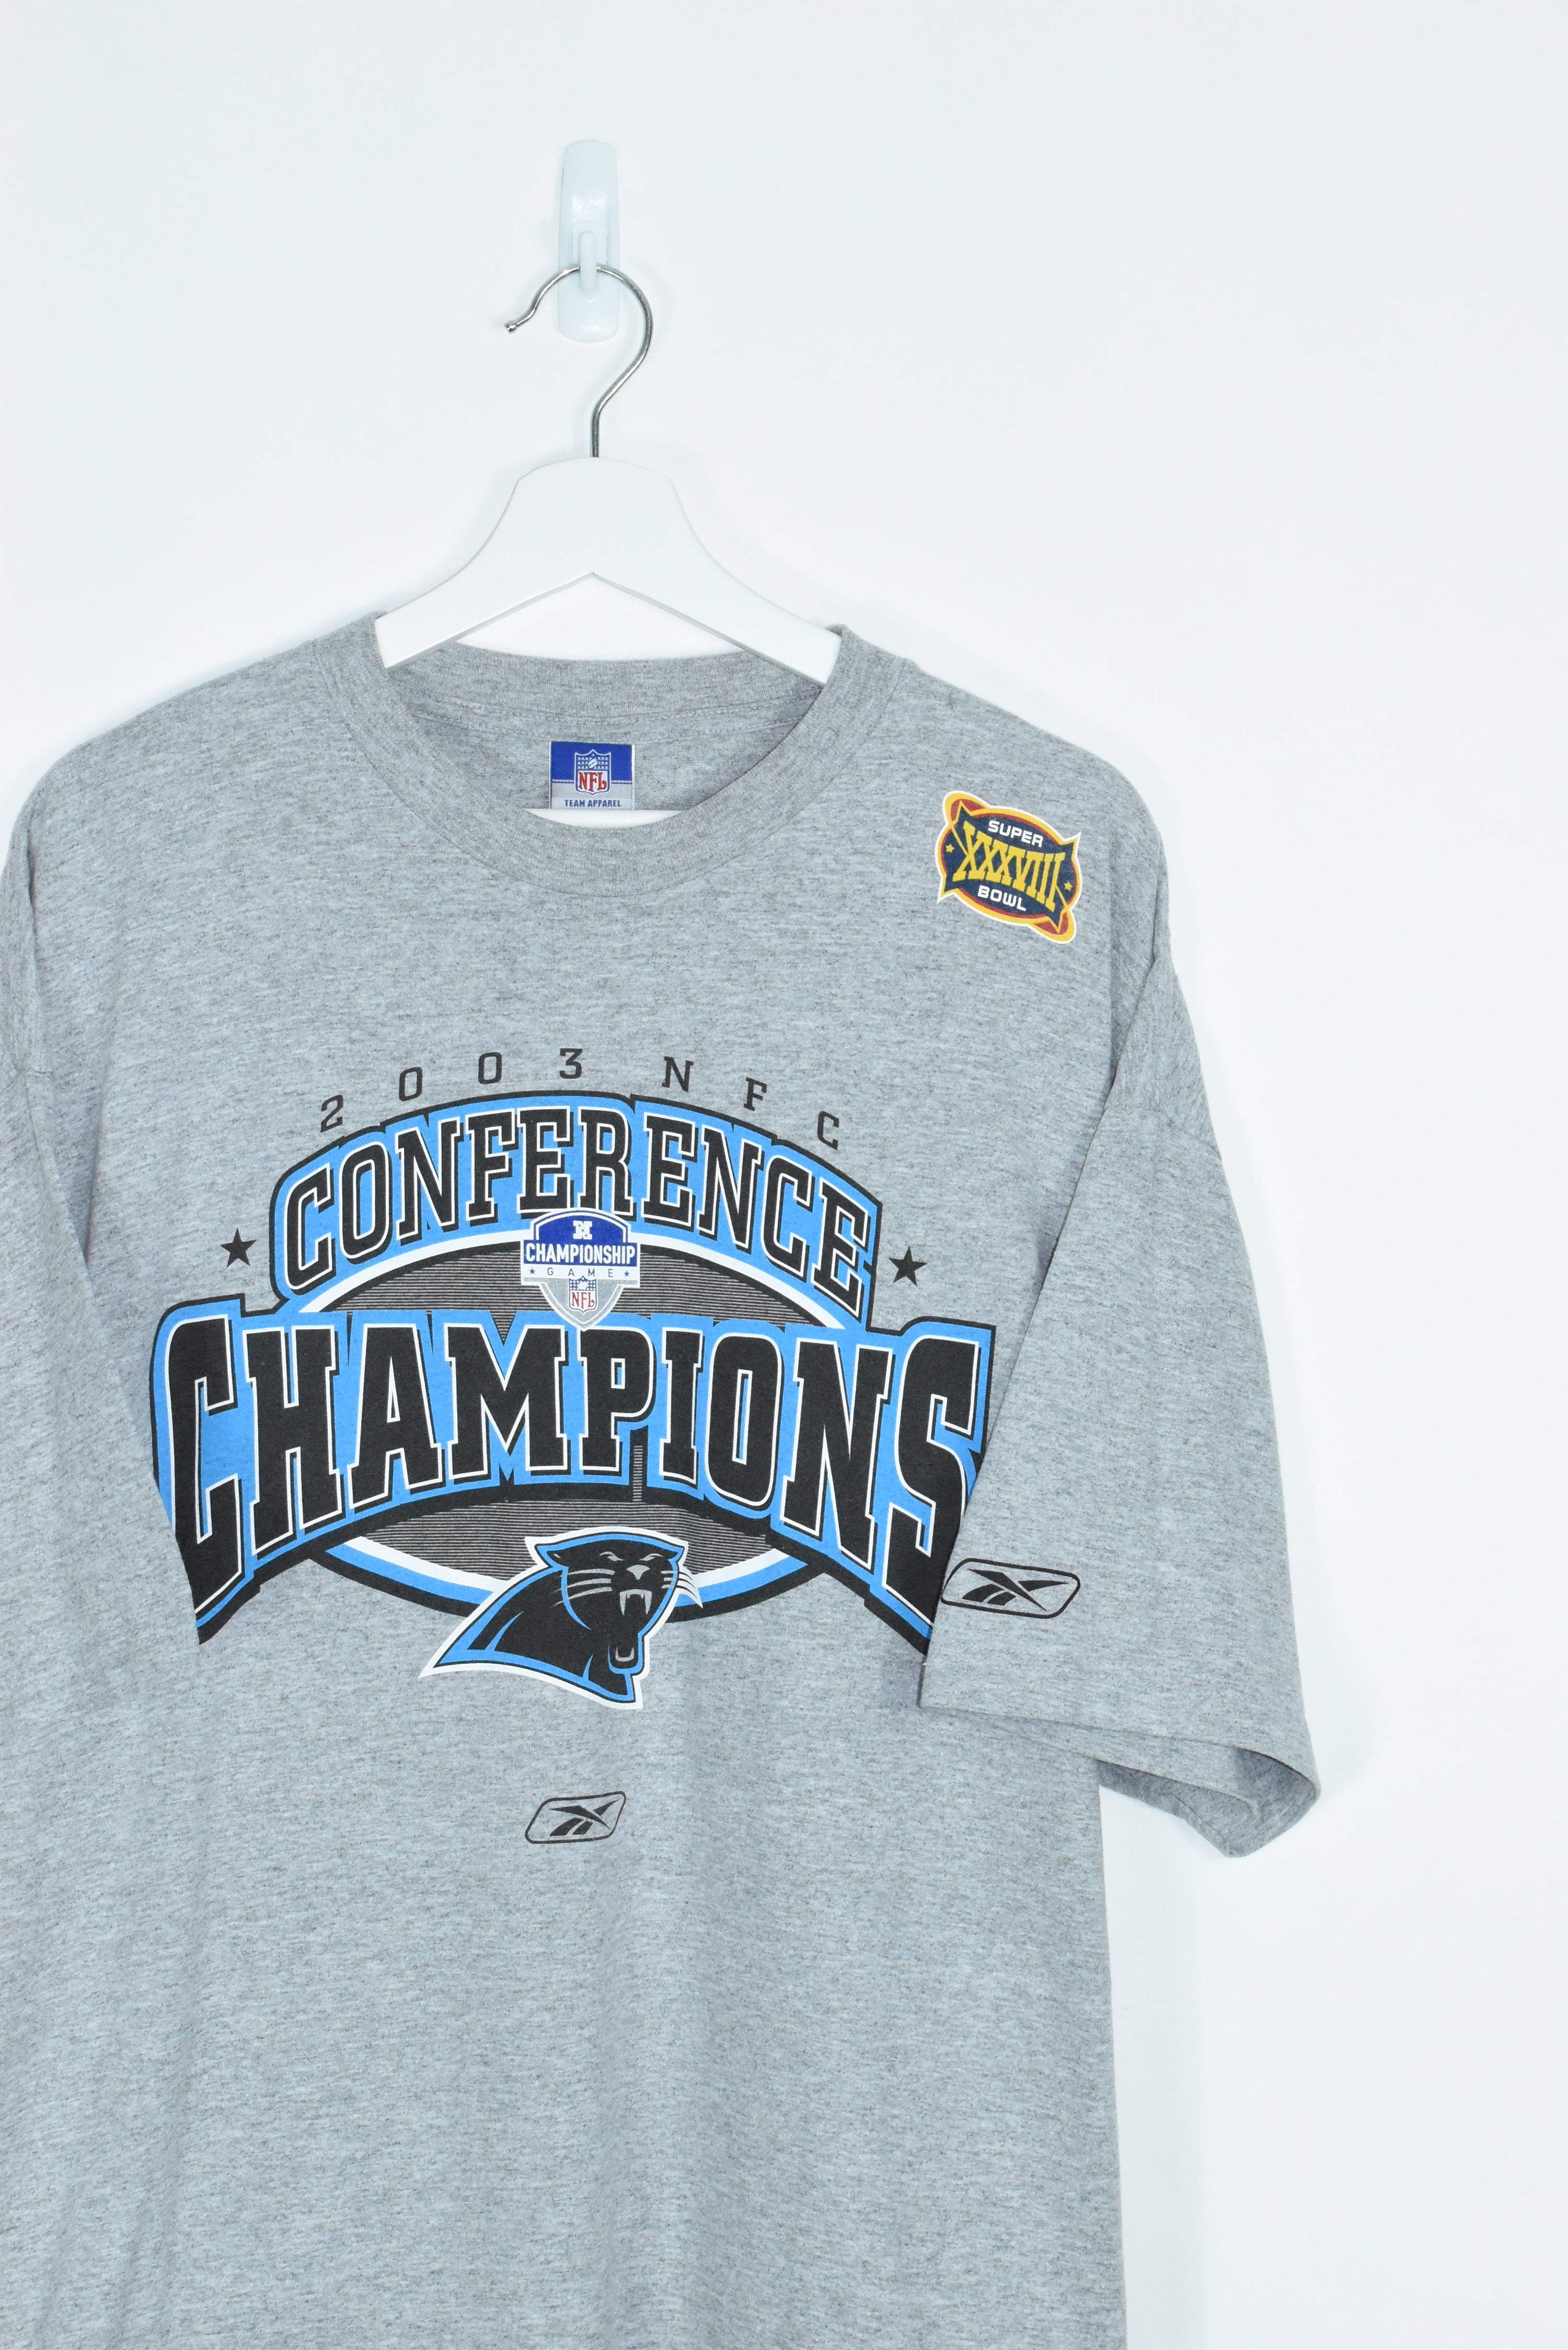 Vintage Carolina Panthers 2003 Champions T Shirt XXL